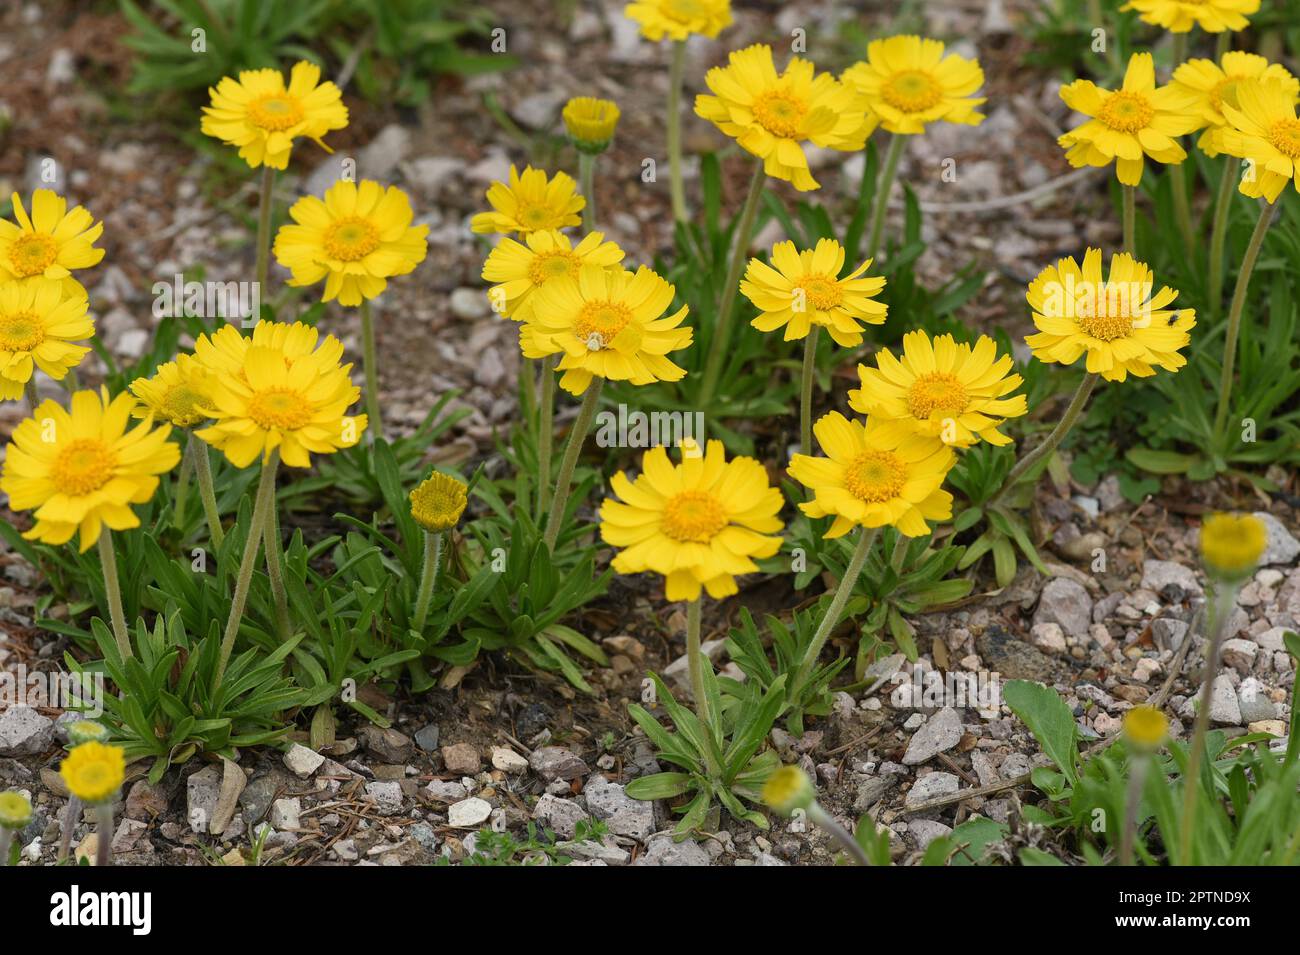 Tetraneuris acaulis ist eine nordamerikanische Bluetenpflanzenart aus der Familie der Sonnenblumen. Tetraneuris acaulis is a North American species of Stock Photo